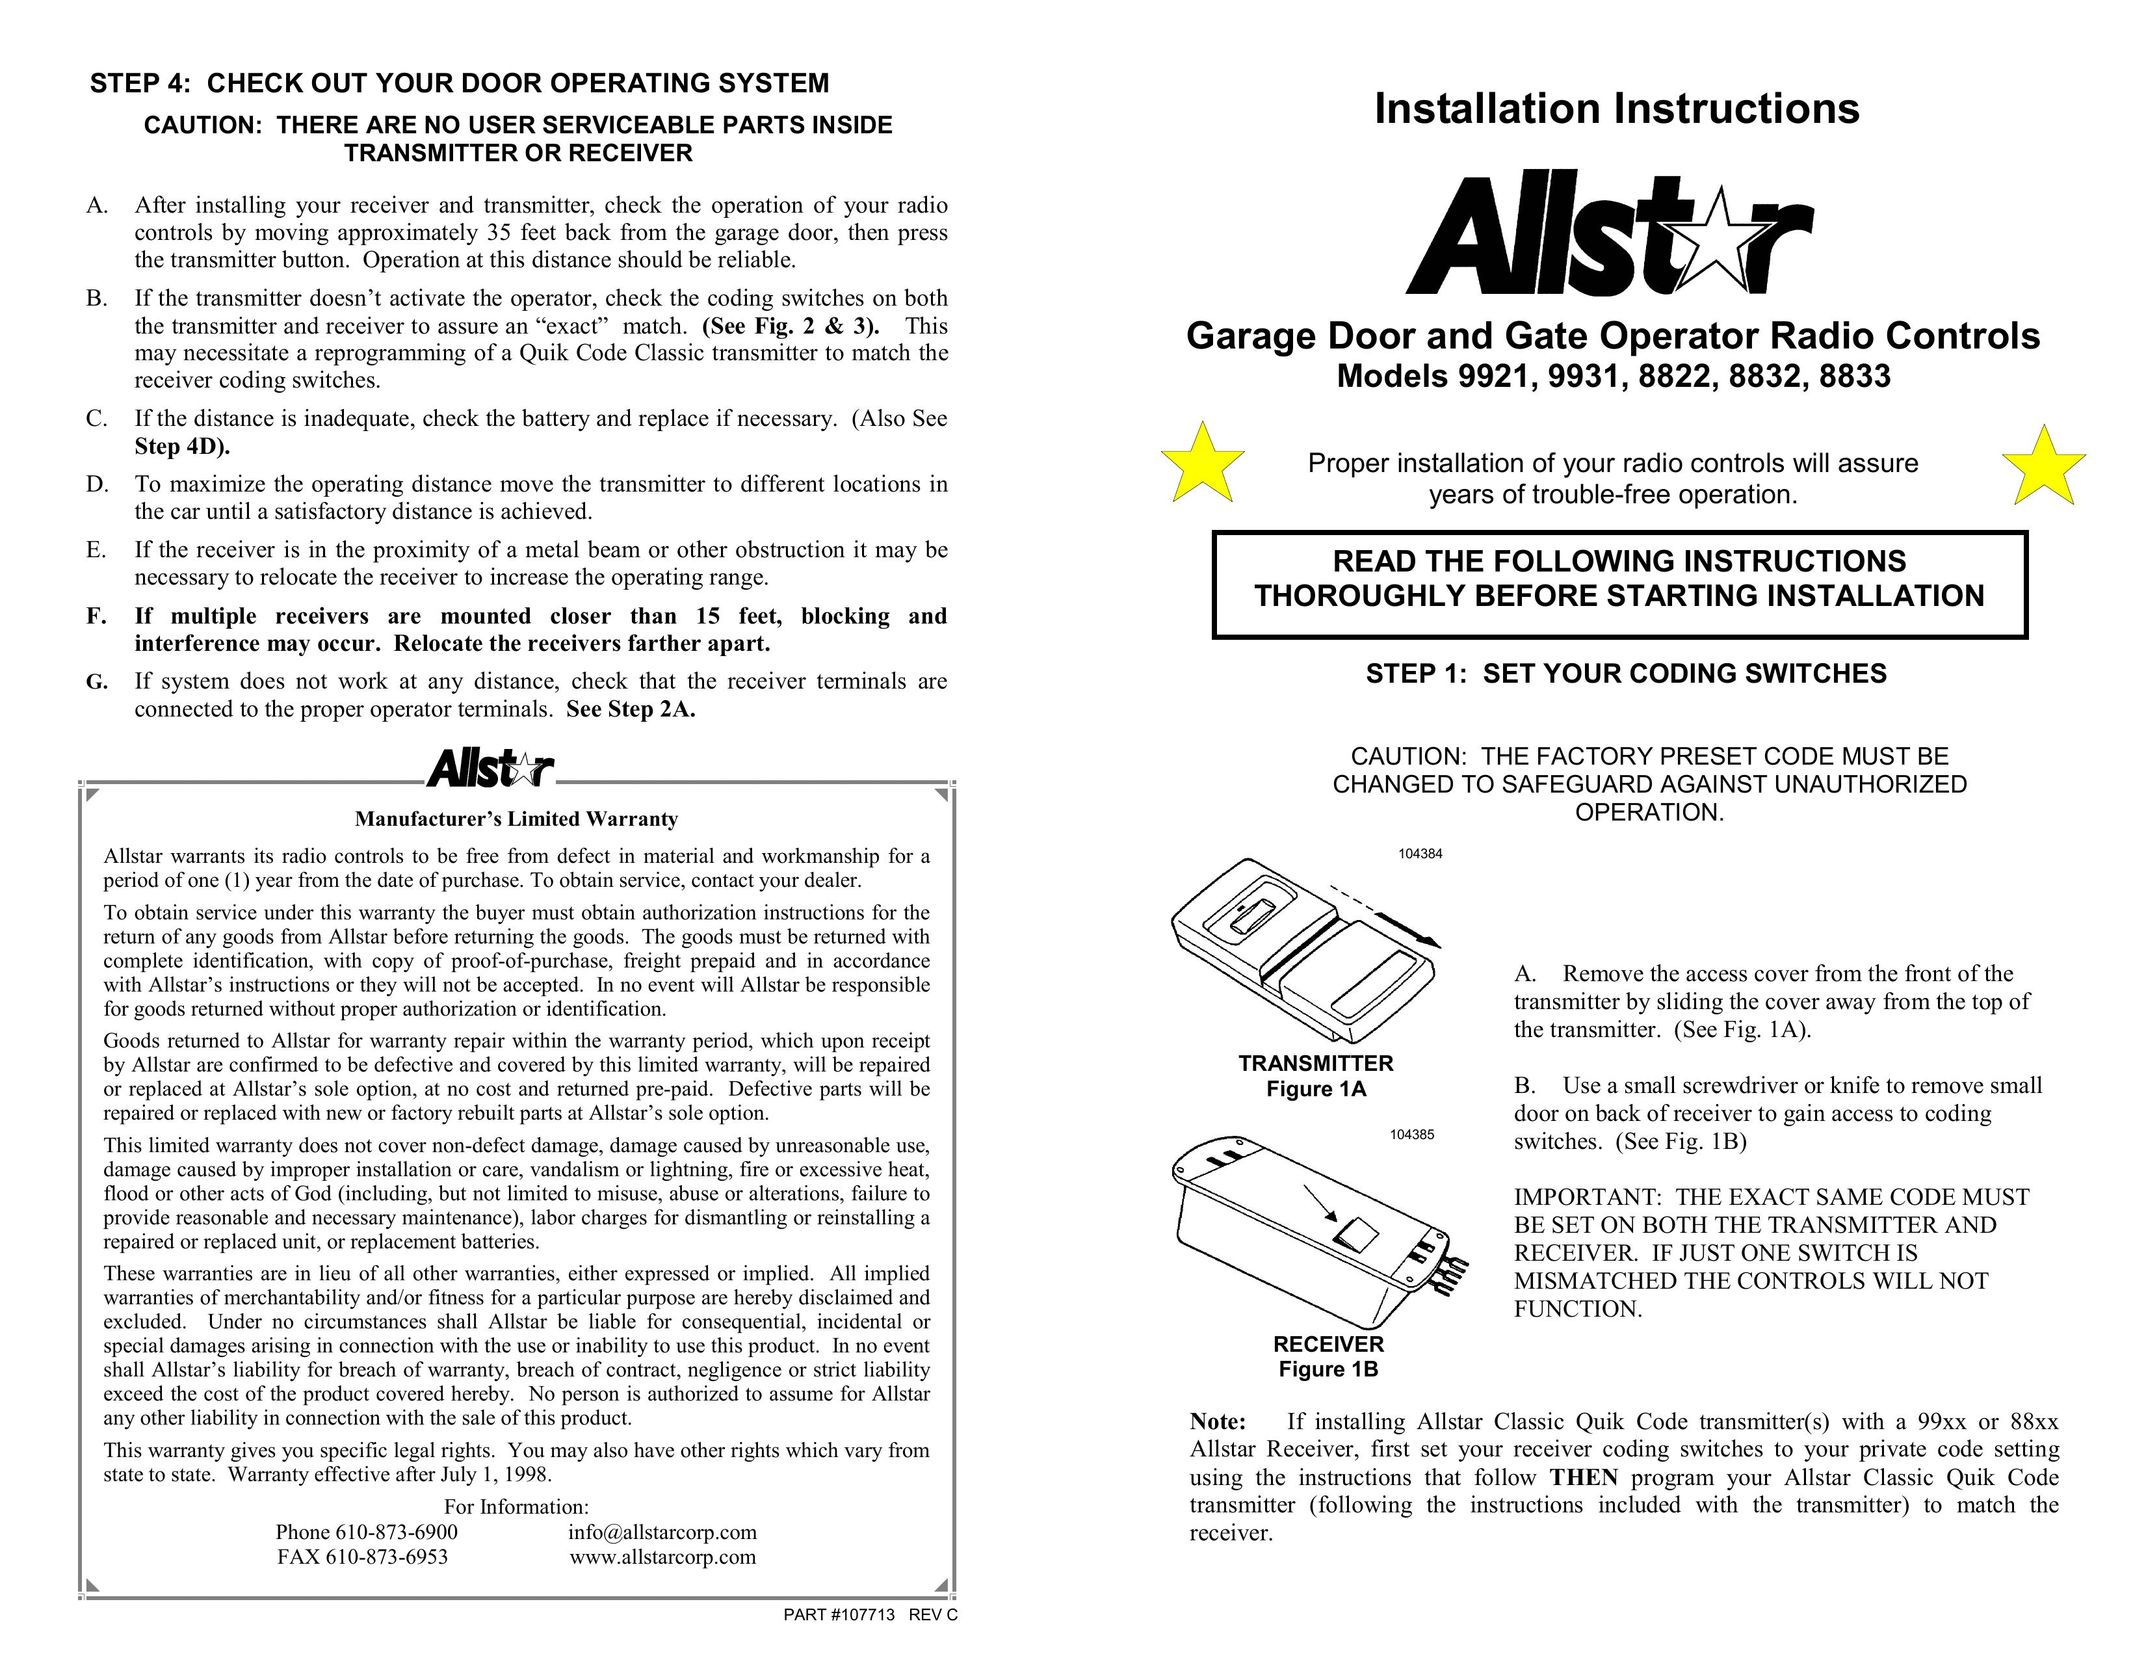 Allstar Products Group 9931 Garage Door Opener User Manual